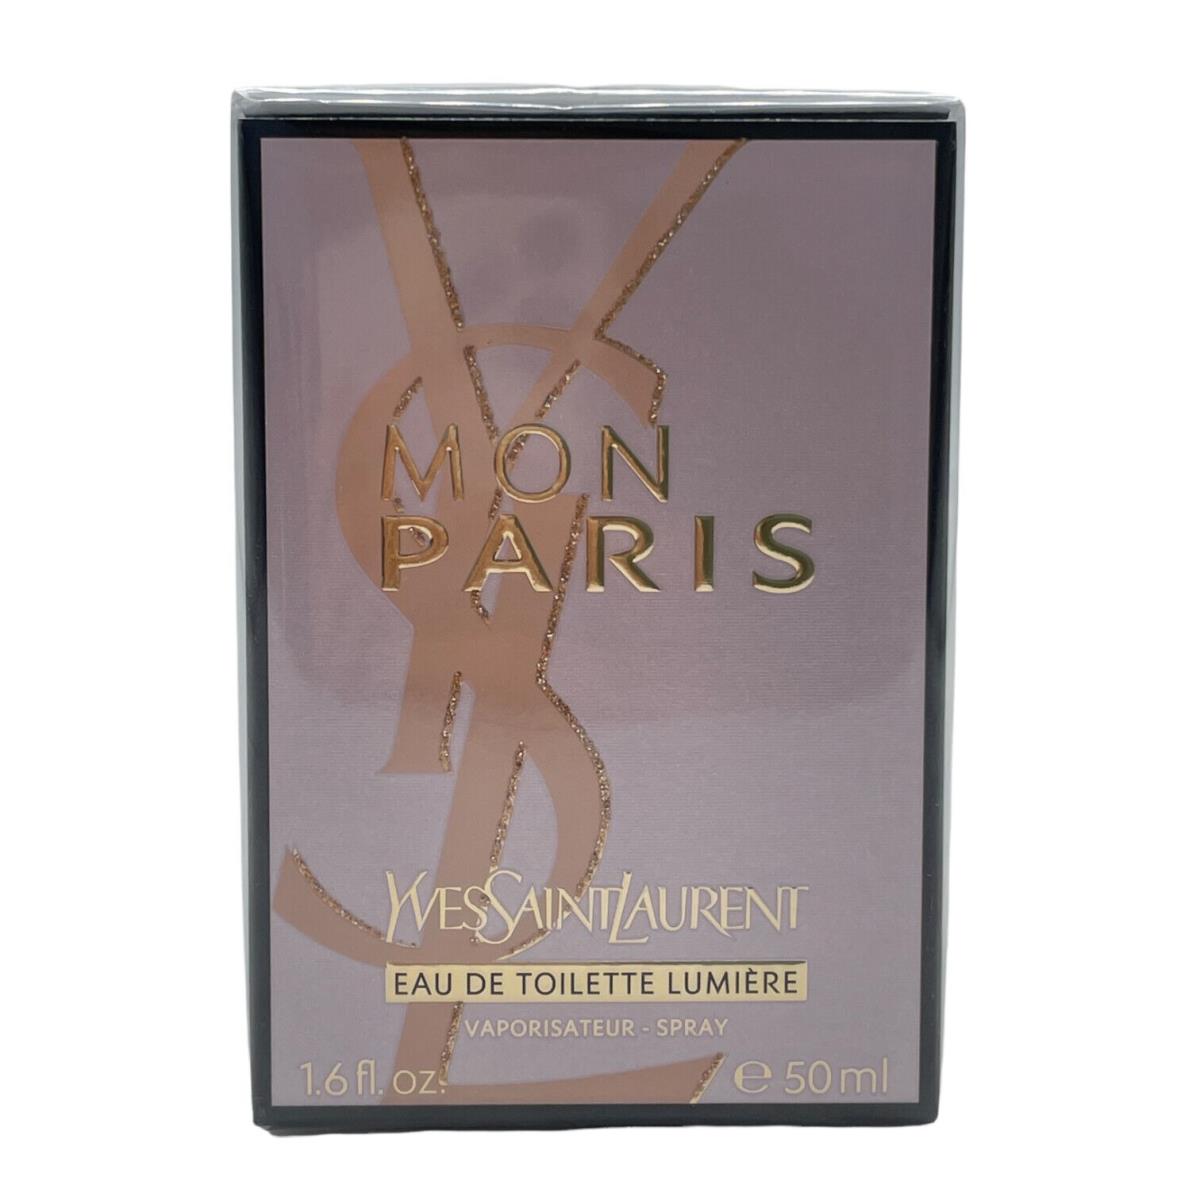 Yves Saint Laurent Ysl Mon Paris Lumiere Women 1.6 oz Eau de Toilette